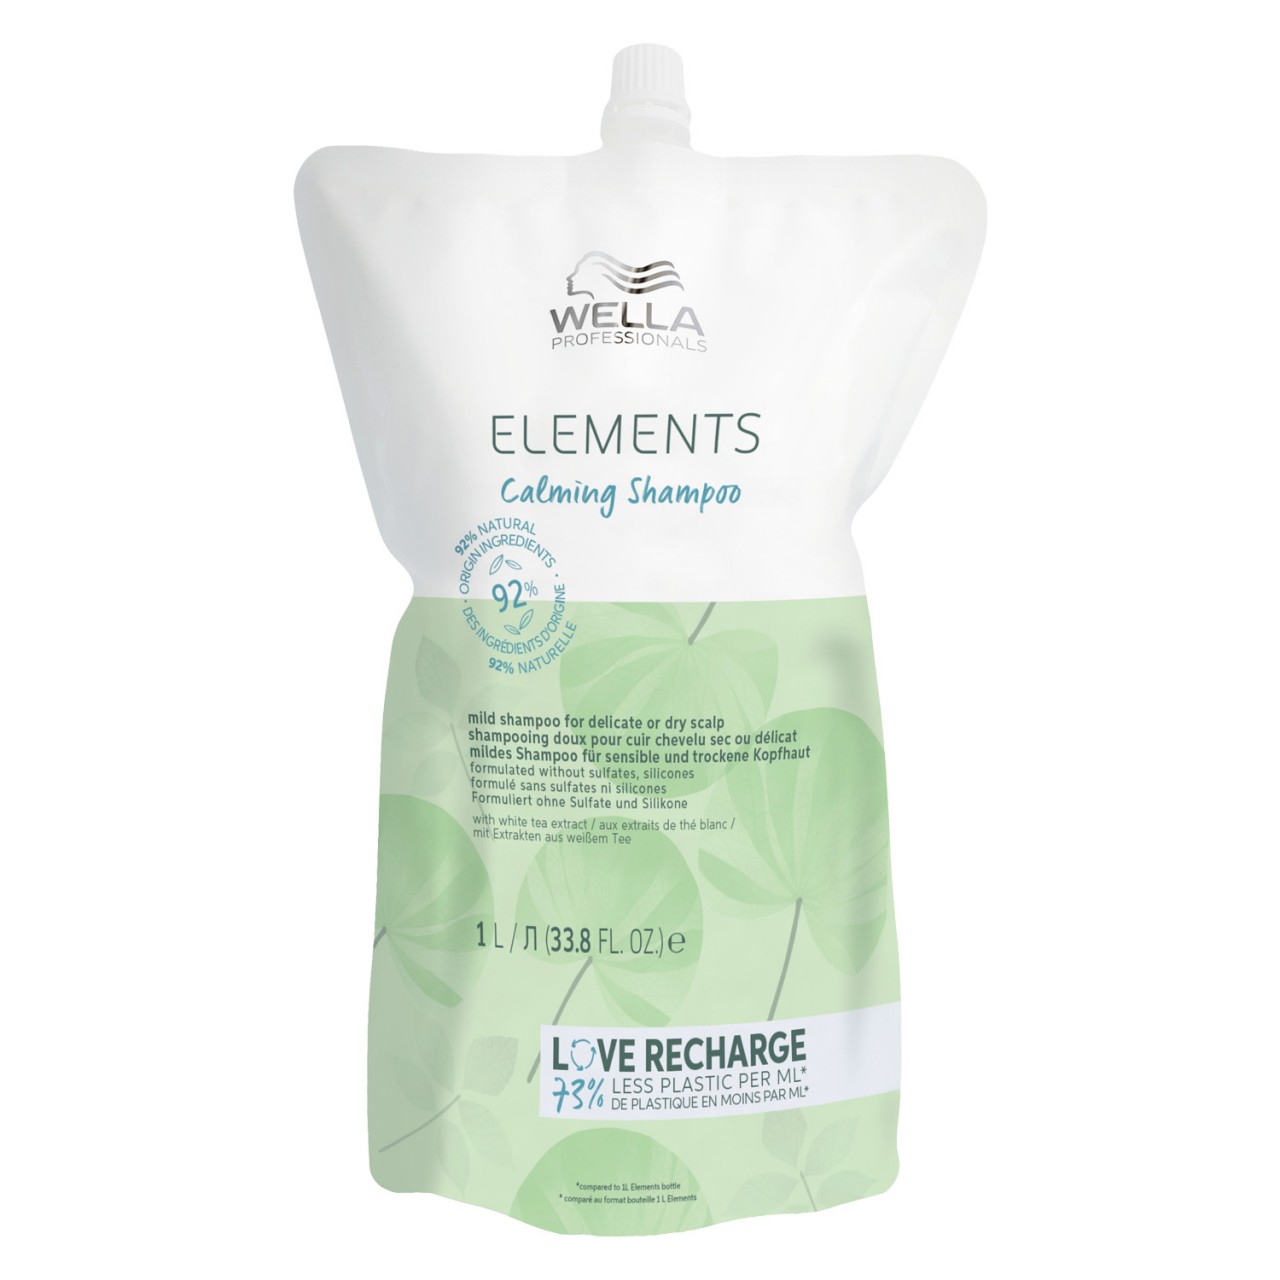 Elements - Calming Shampoo Refill von Wella